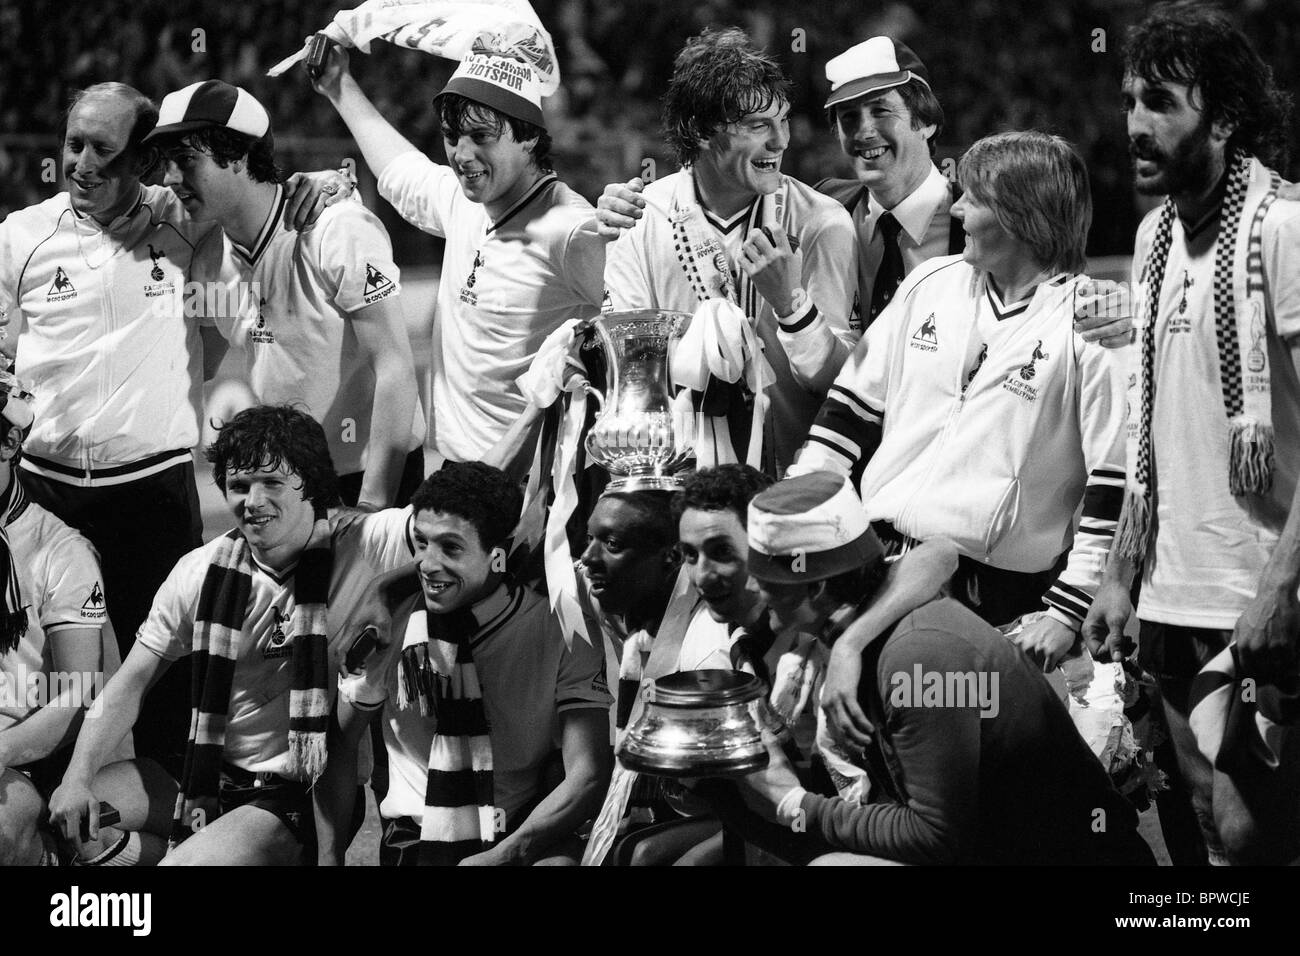 Finale de la FA Cup replay V Manchester City Tottenham Hotspur à Wembley 9/5/1981 joueurs Spurs célébrer remportant trophy Banque D'Images